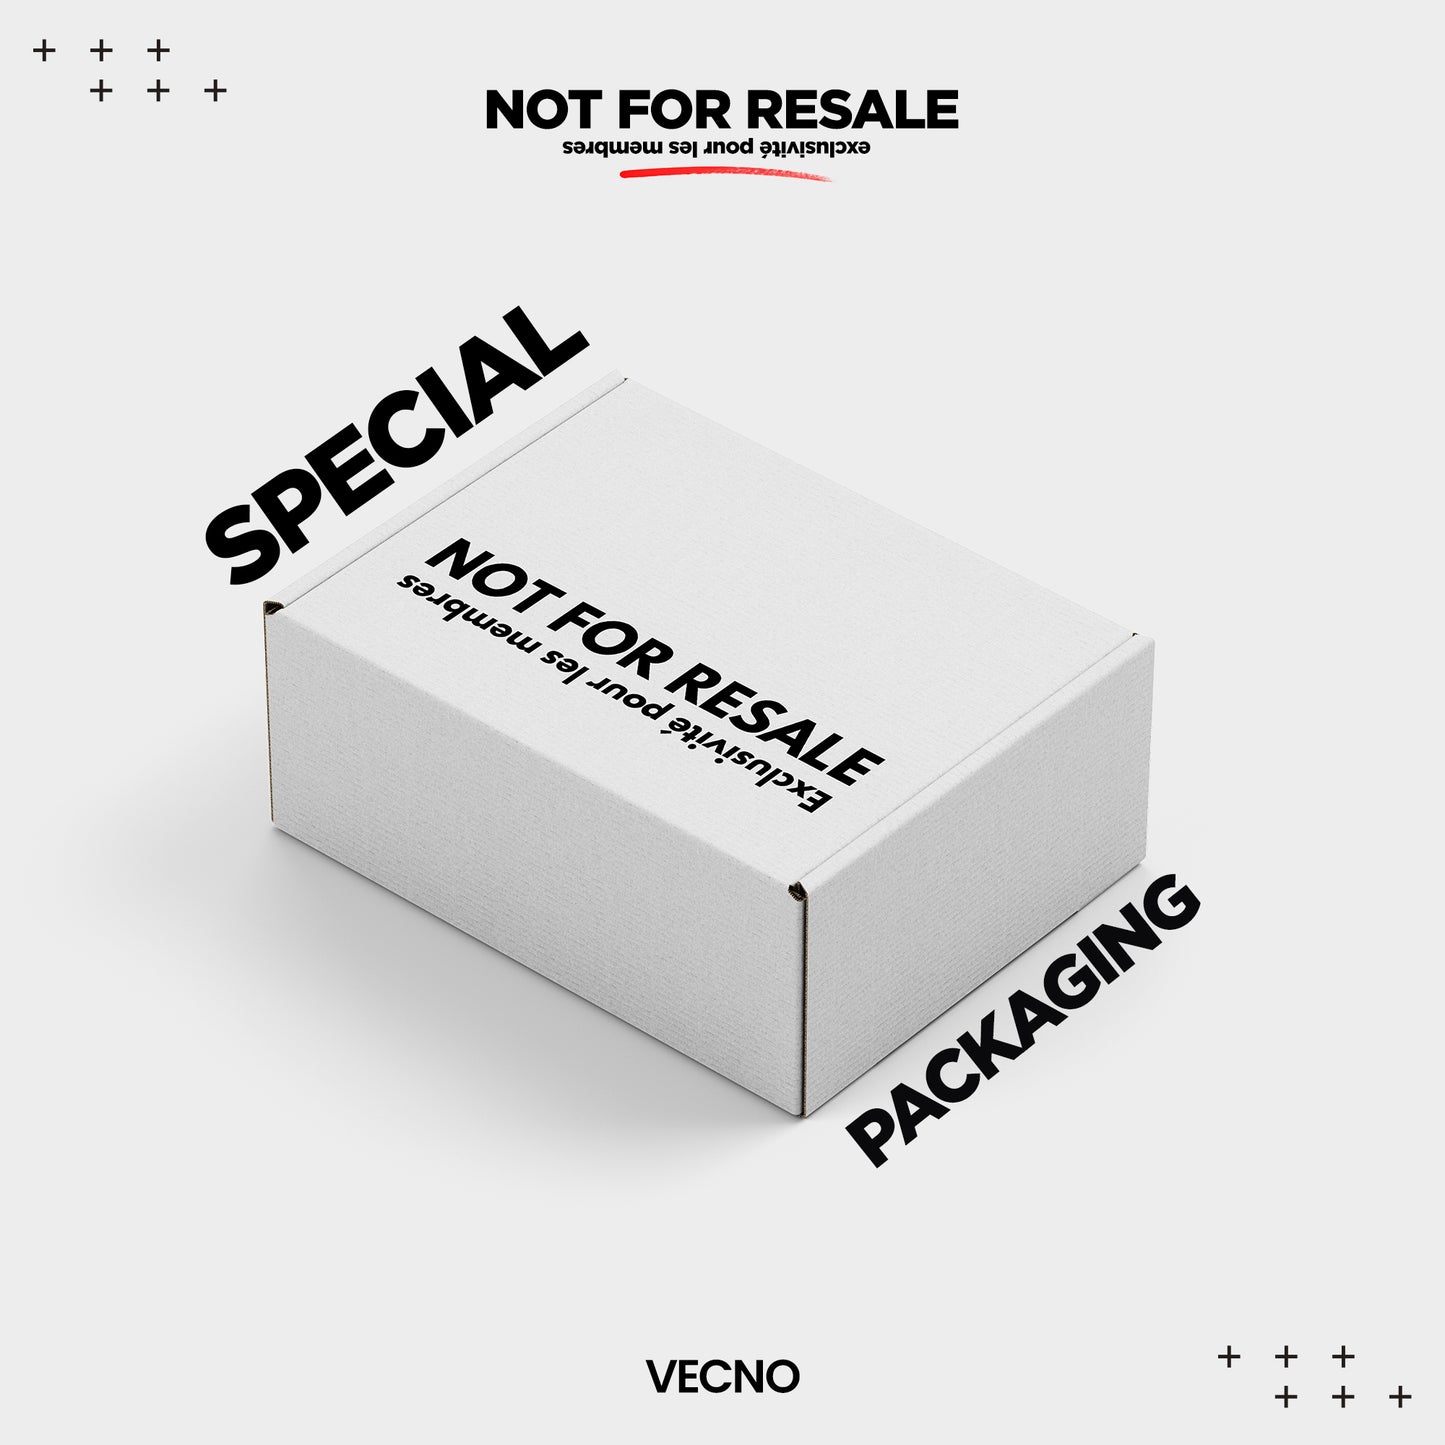 VECNO Exclusivité pour les membres "NOT FOR RESALE"